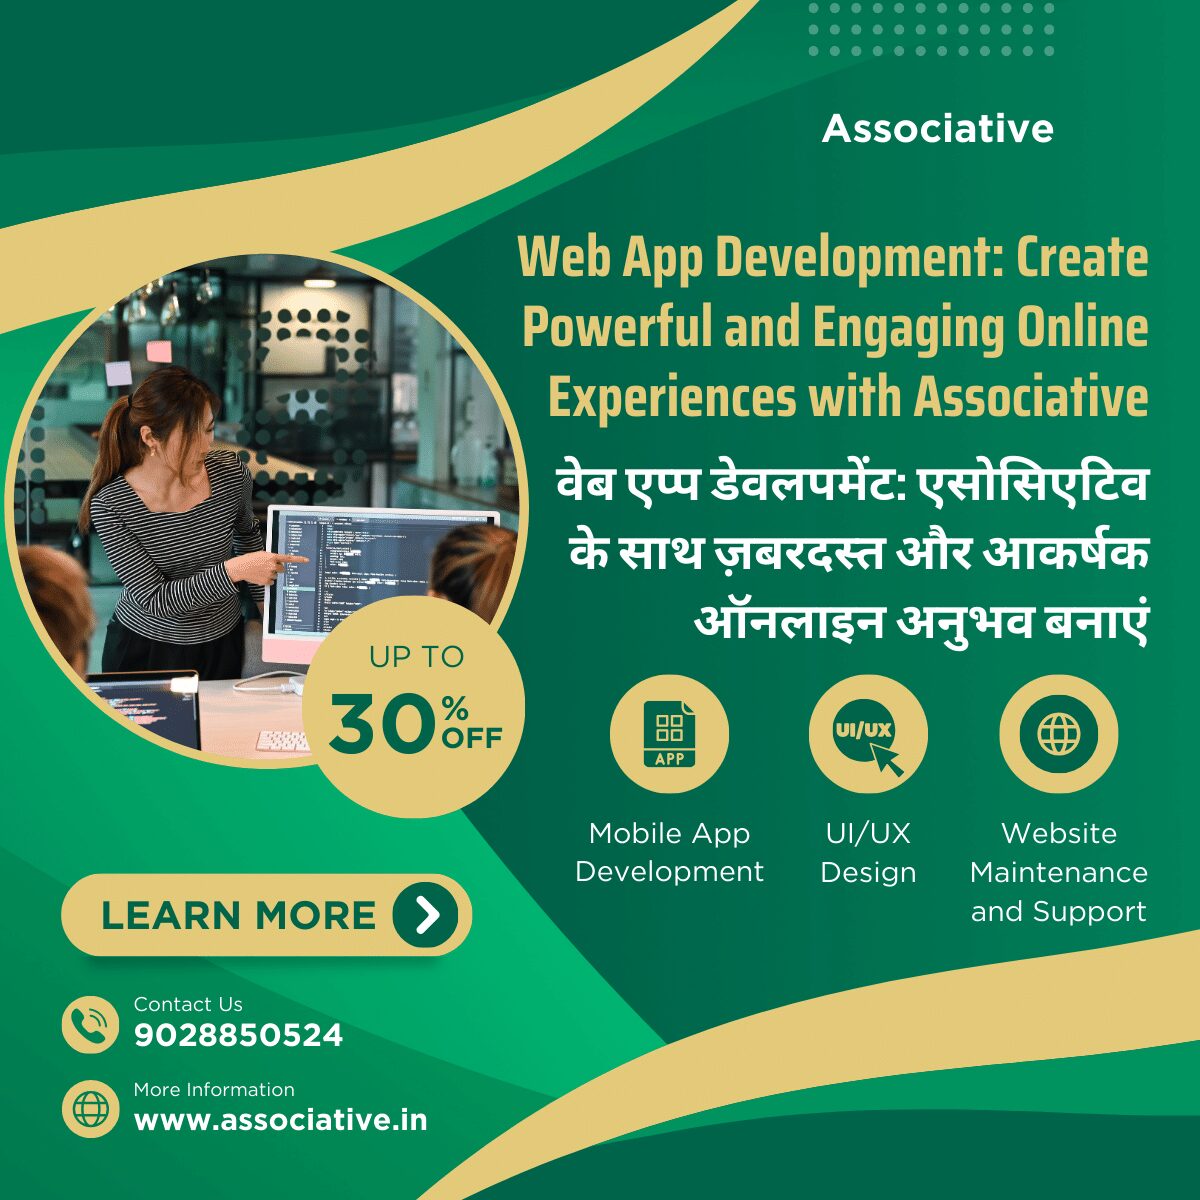 Web App Development: Create Powerful and Engaging Online Experiences with Associative वेब एप्प डेवलपमेंट: एसोसिएटिव के साथ ज़बरदस्त और आकर्षक ऑनलाइन अनुभव बनाएं